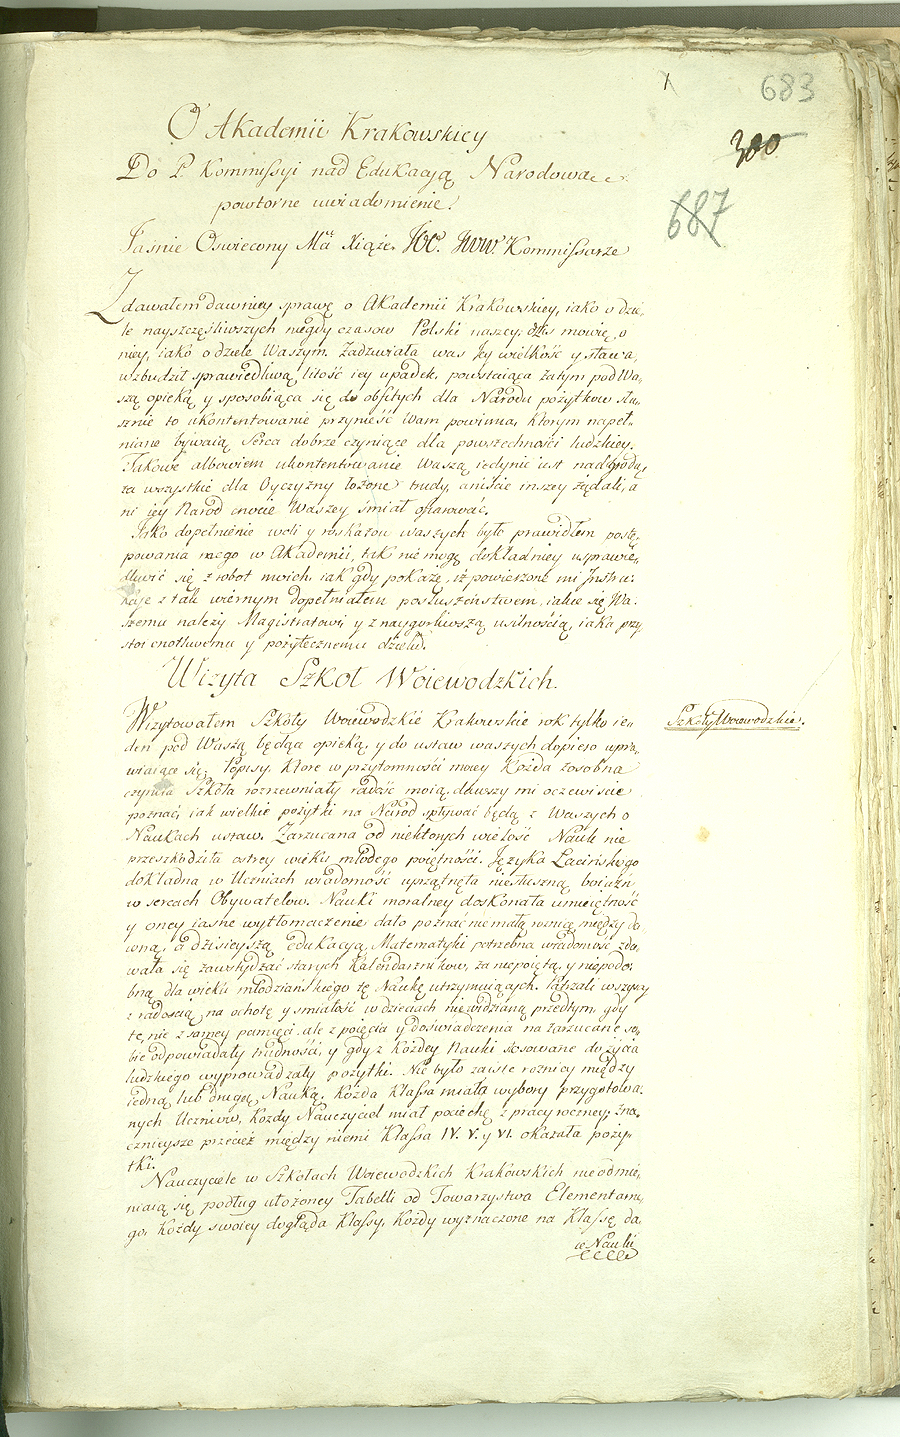 국가교육위원회 문서

폴란드의 교육시스템 개혁과 관련하여 1773-1794년에 작성된 서류와 녹음자료 컬렉션이다.
